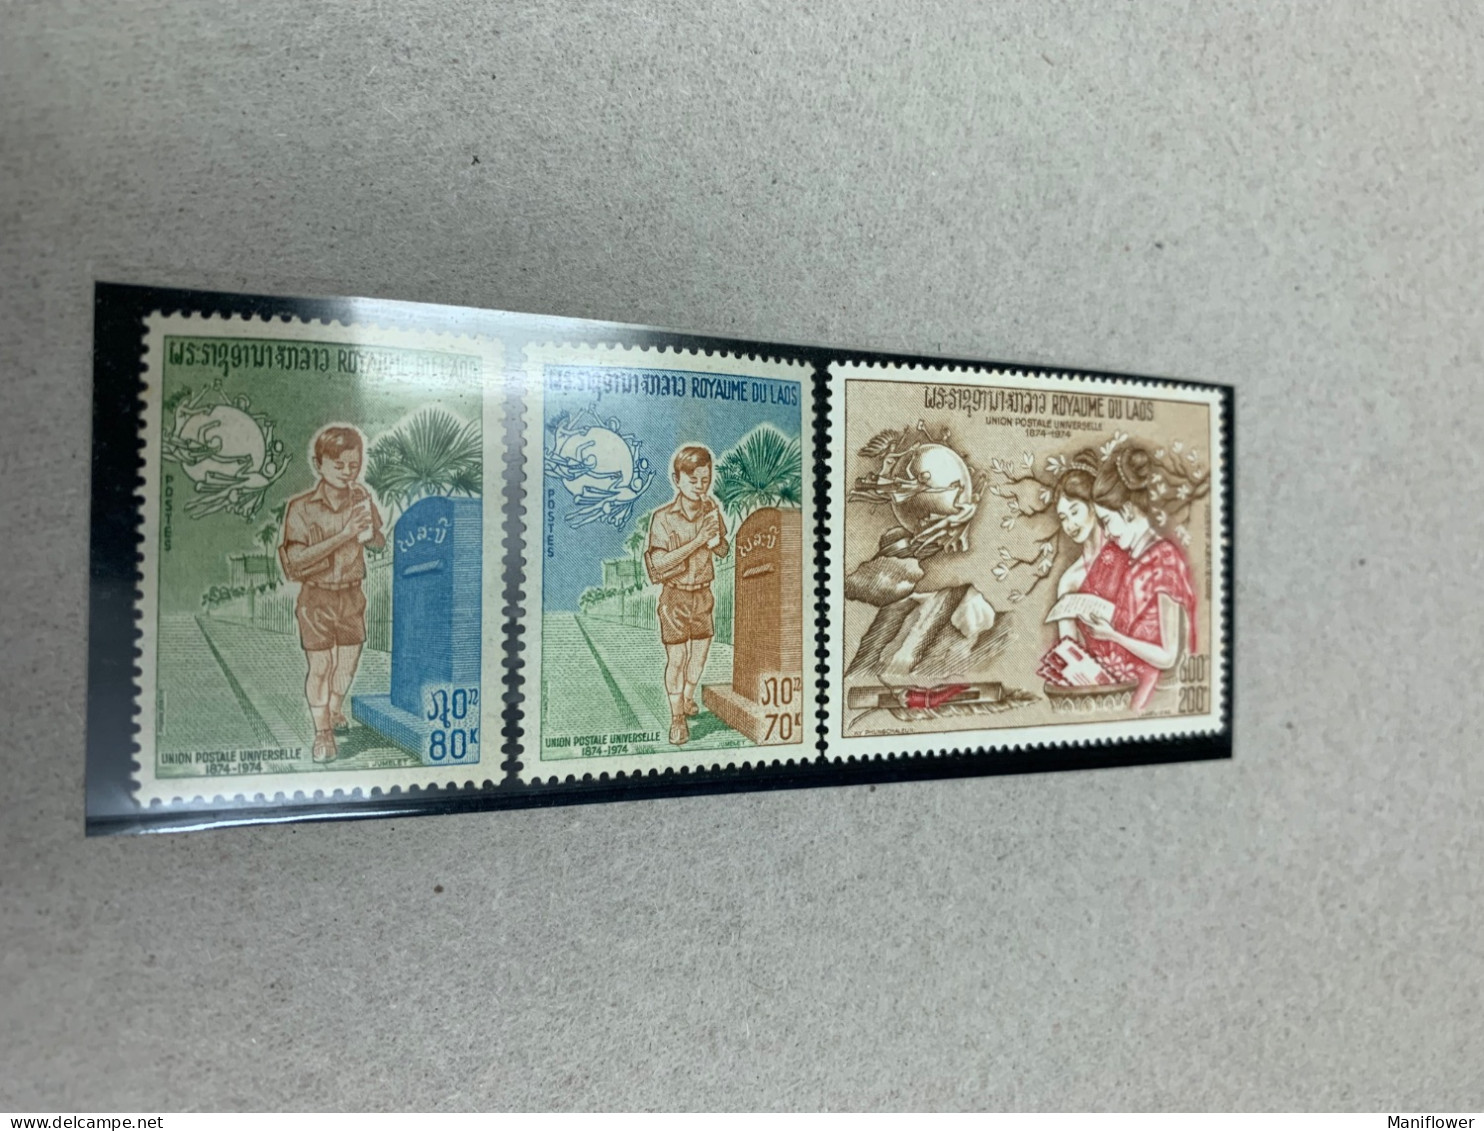 Laos Stamp UPU Post Box MNH - UPU (Unione Postale Universale)